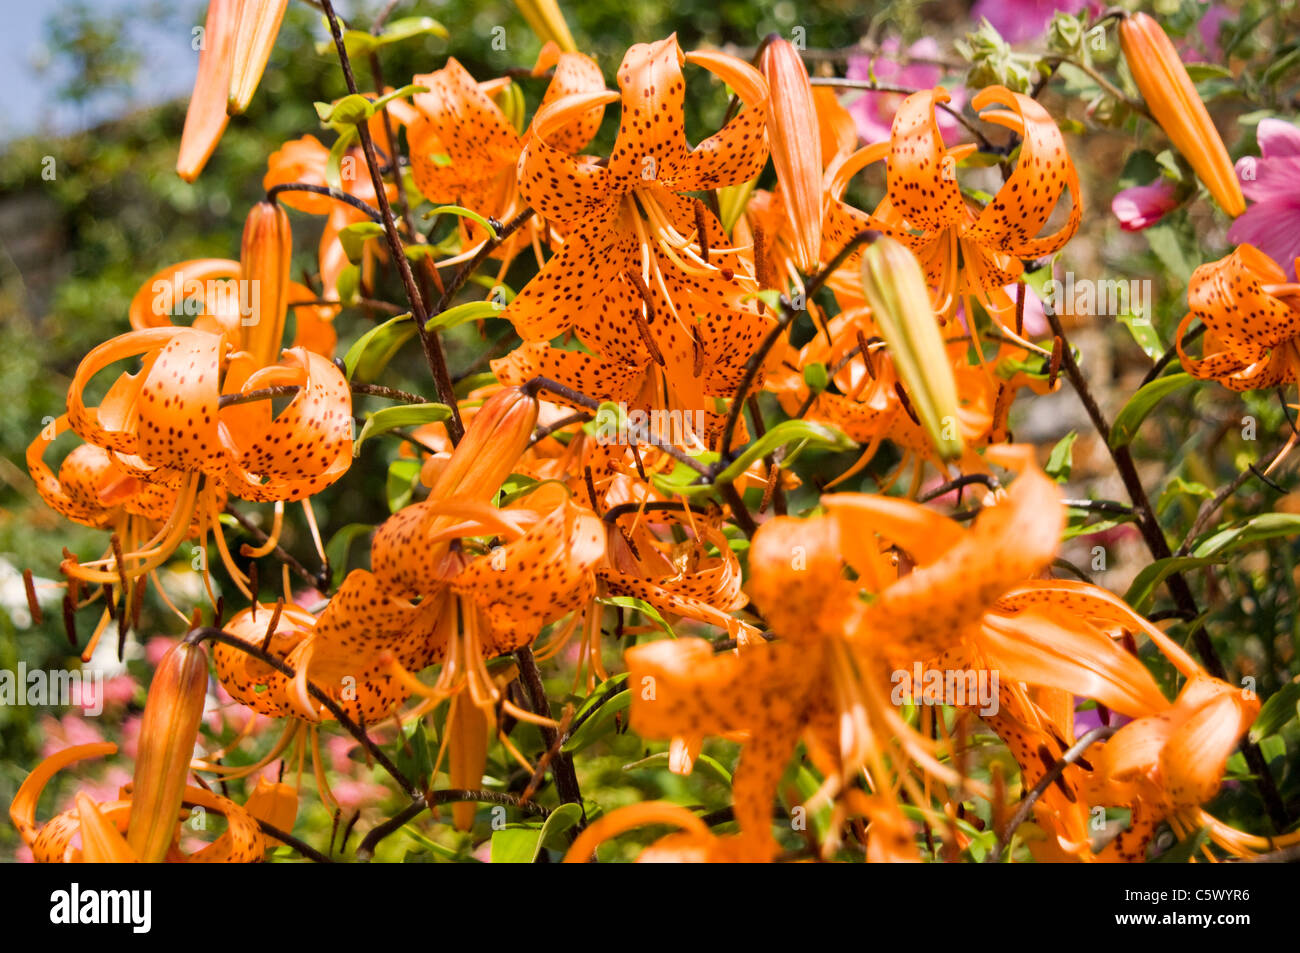 Nahaufnahme von Blumen im Gemüsegarten Oxburgh Hall, viktorianischen Garten, Blumengärten, Blütenstand, Blütenpracht Stockfoto